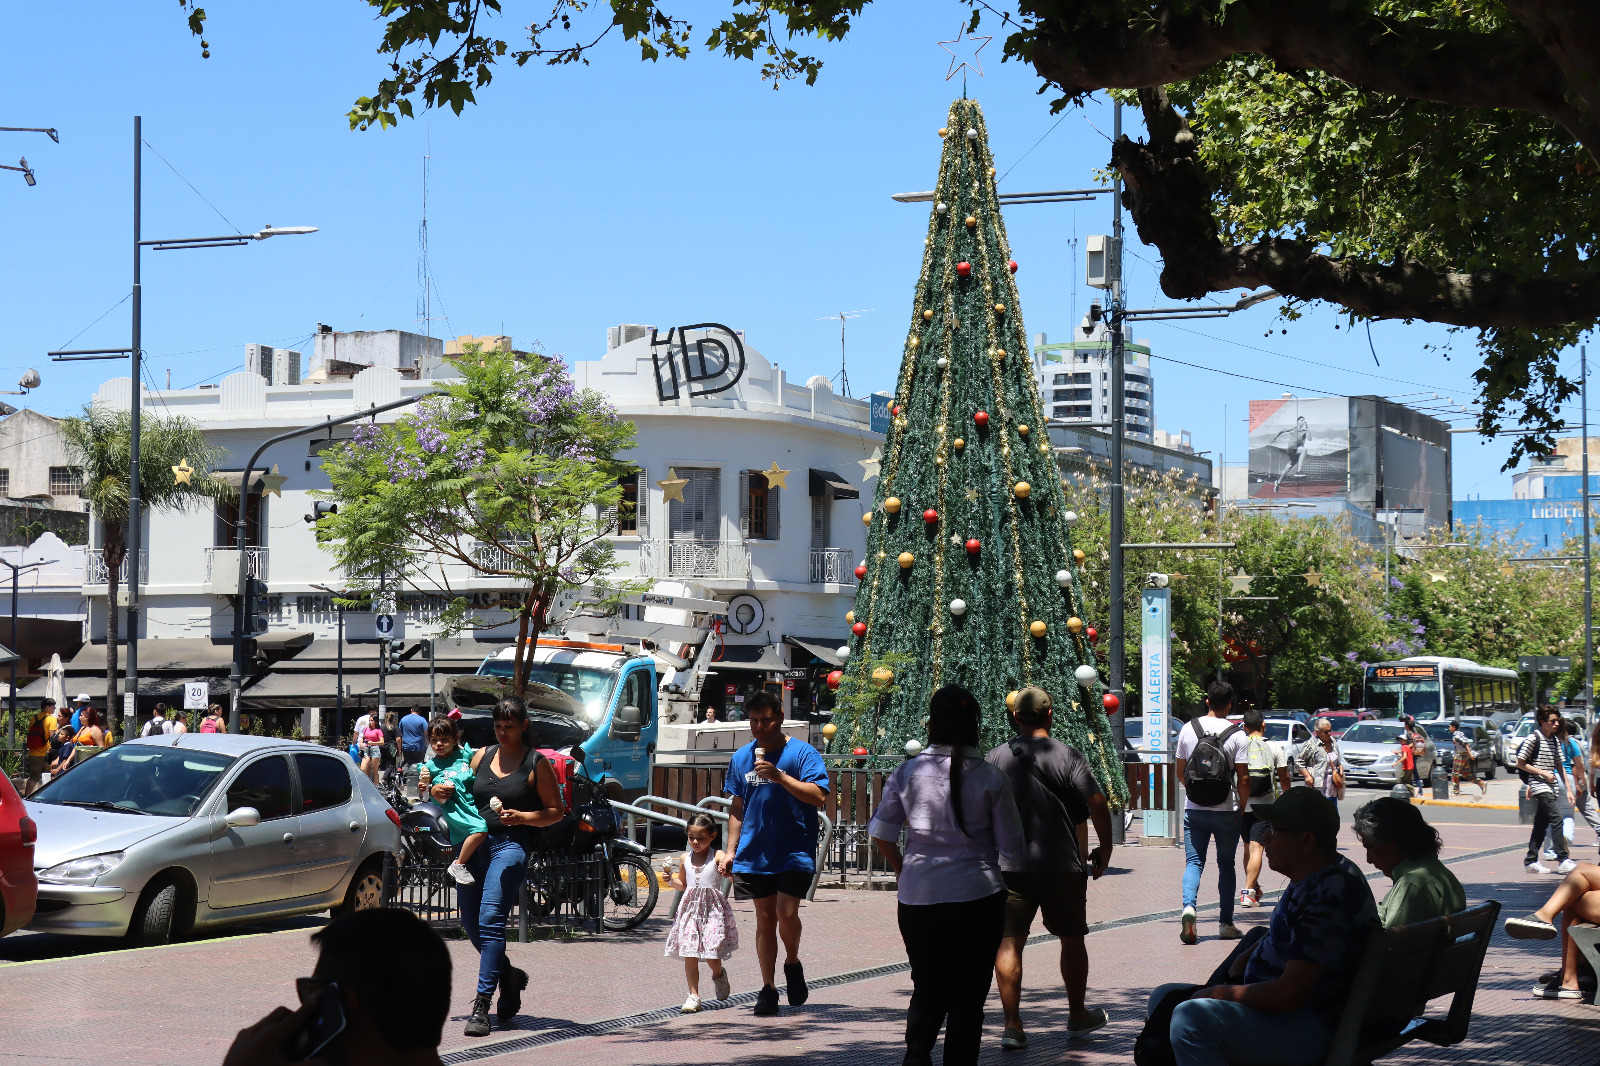 Promociones y sorteo navideño en el centro comercial de San Miguel